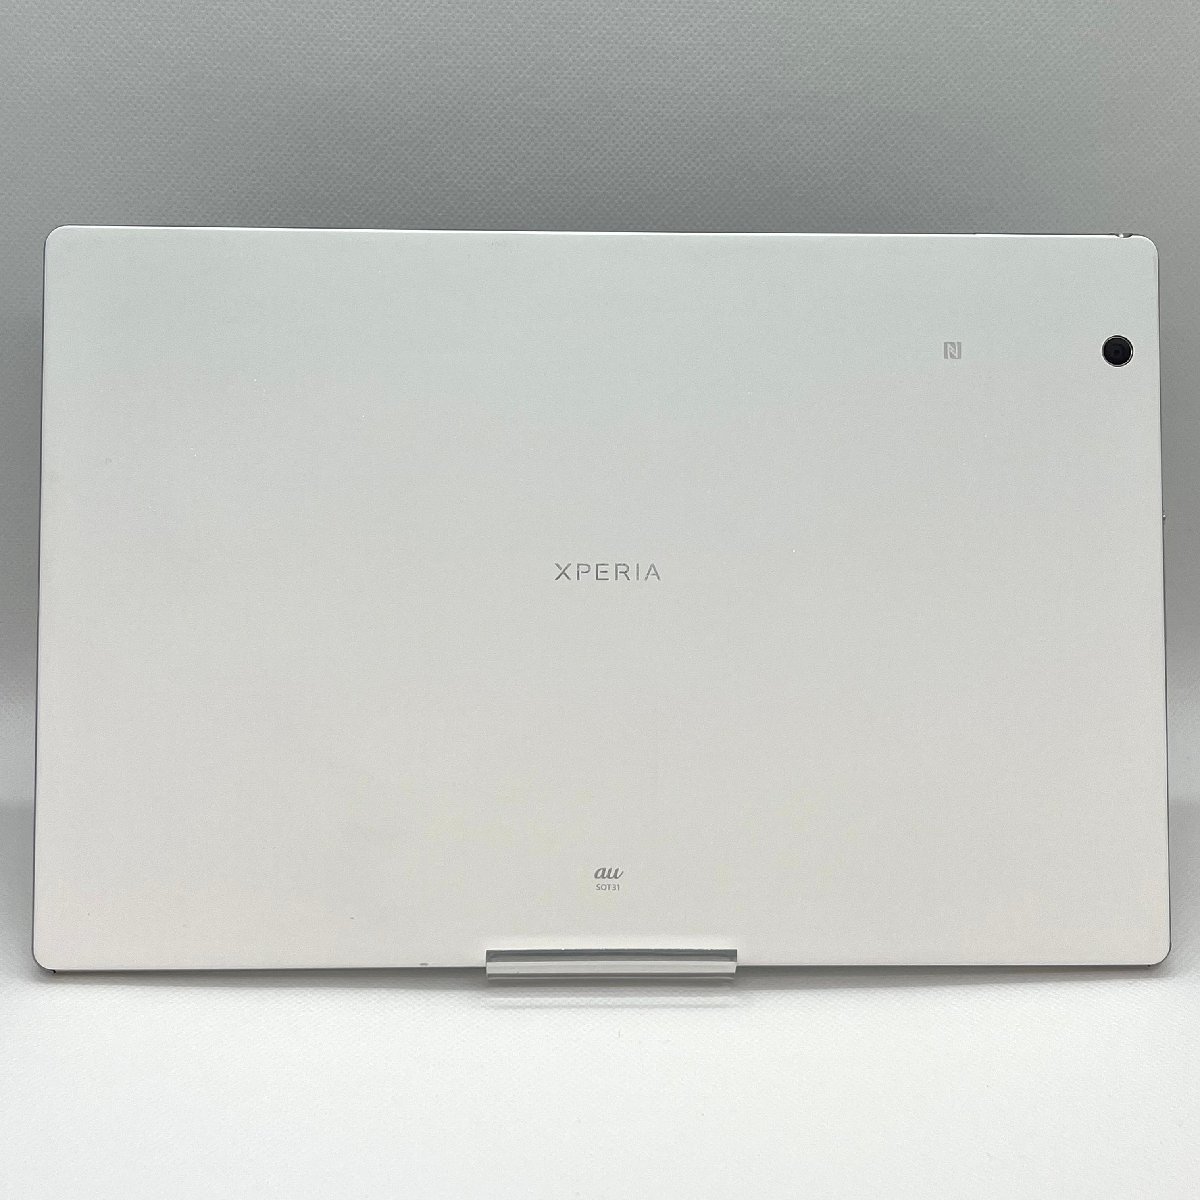 訳あり Xperia Z4 Tablet SOT31 ホワイト au SIMロック解除済み バージョン7.0 白ロム タブレット本体 送料無料 T50_画像3